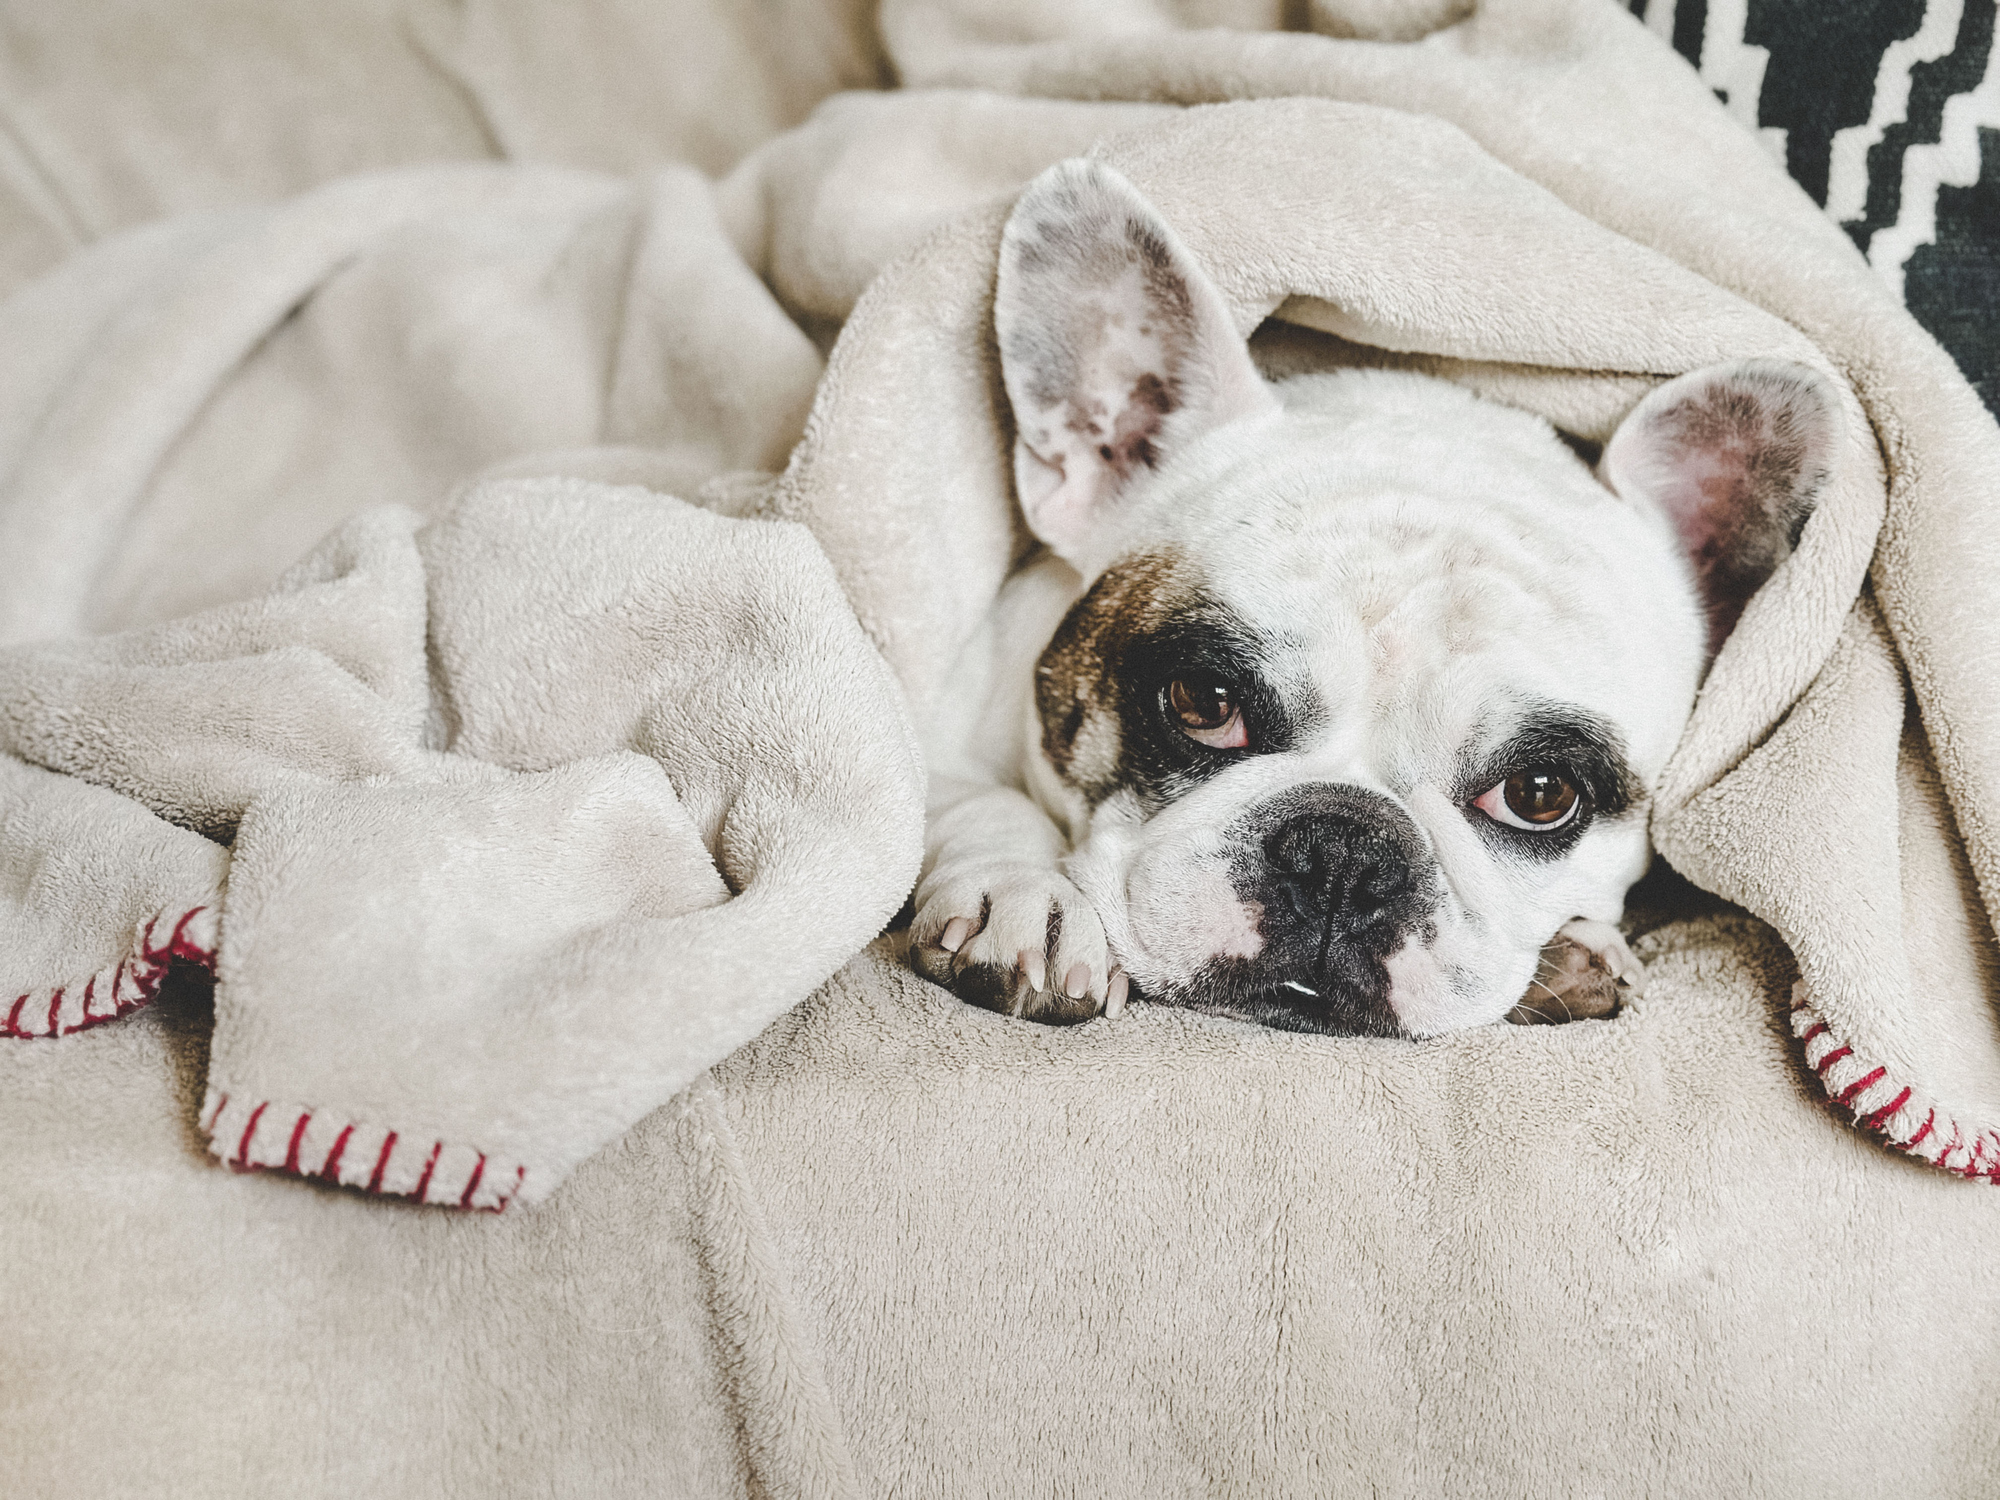 French Bulldog sleeping under a blanket